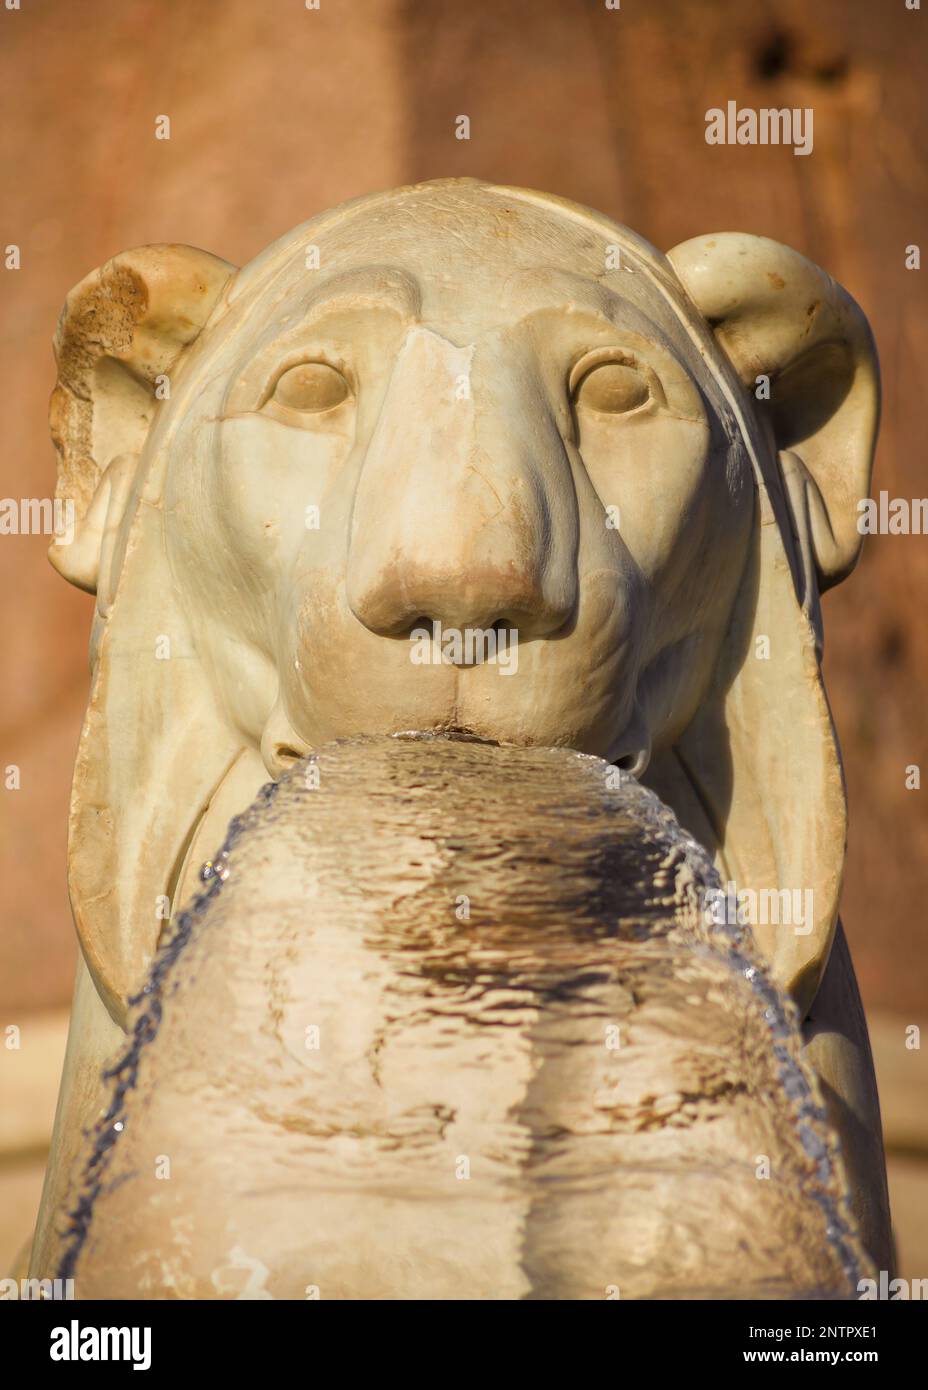 Tête de lion égyptien de marbre de la fontaine centrale de Piazza del Popolo, érigée en 1823, l'une des plus importantes et anciennes places de Rome Banque D'Images